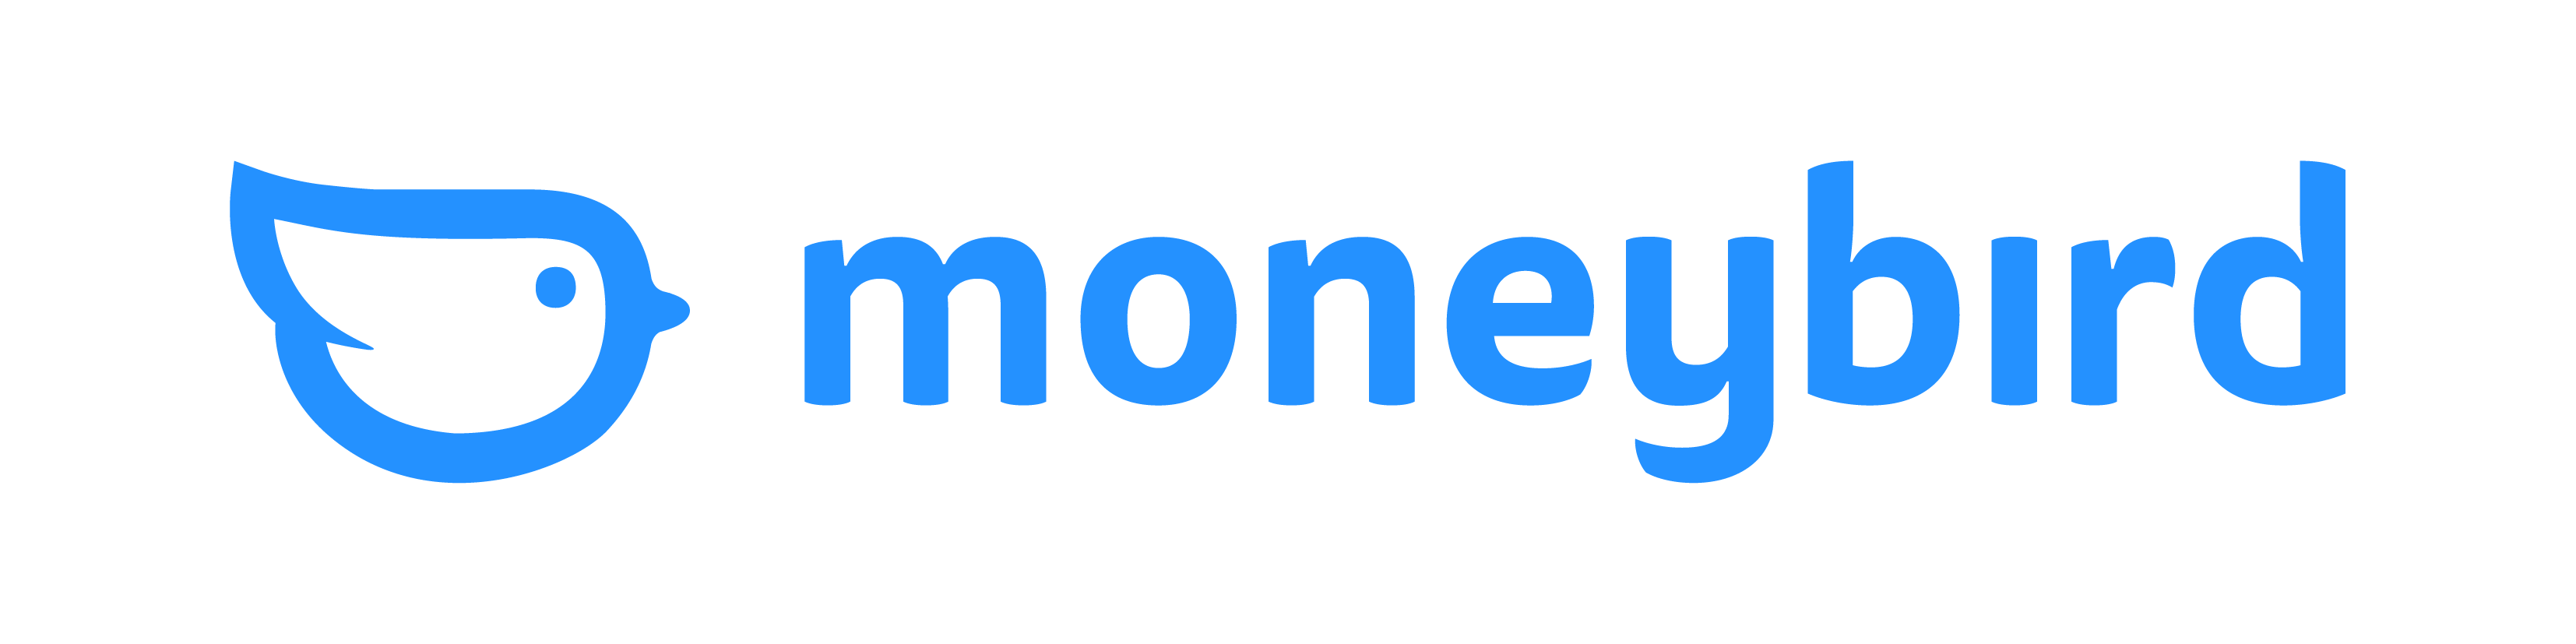 Moneybird logo